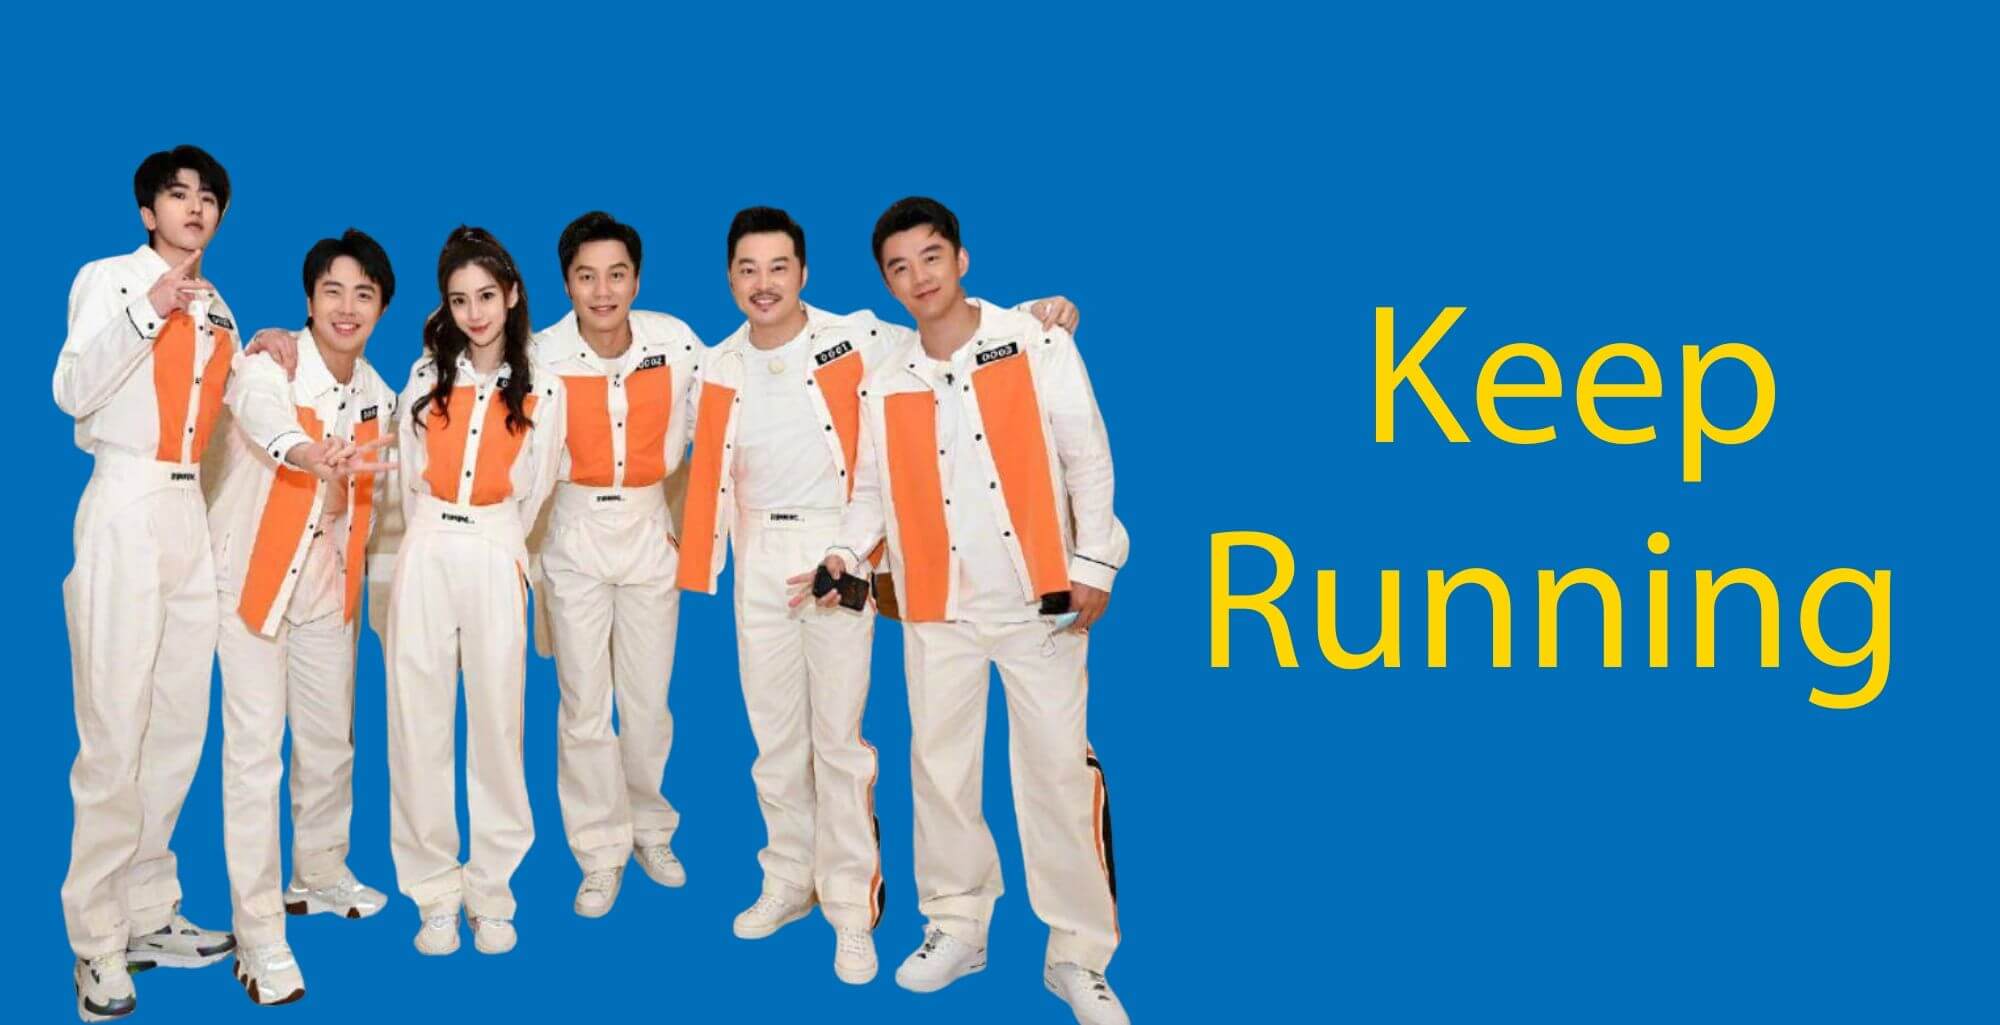 Keep running 1. Keep Running.